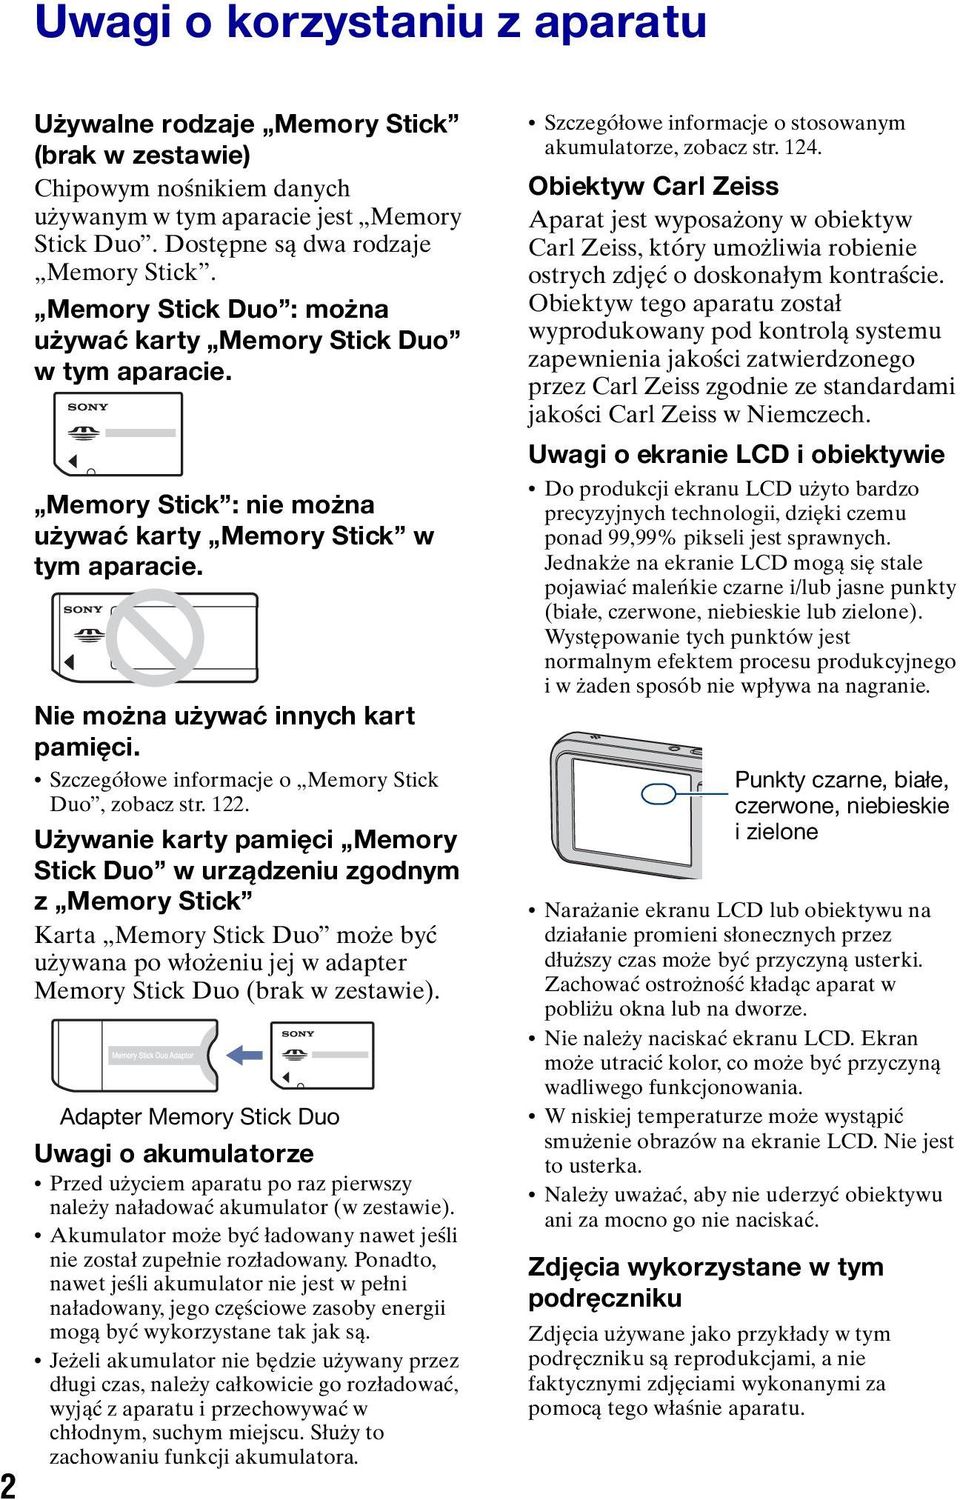 Szczegółowe informacje o Memory Stick Duo, zobacz str. 122.